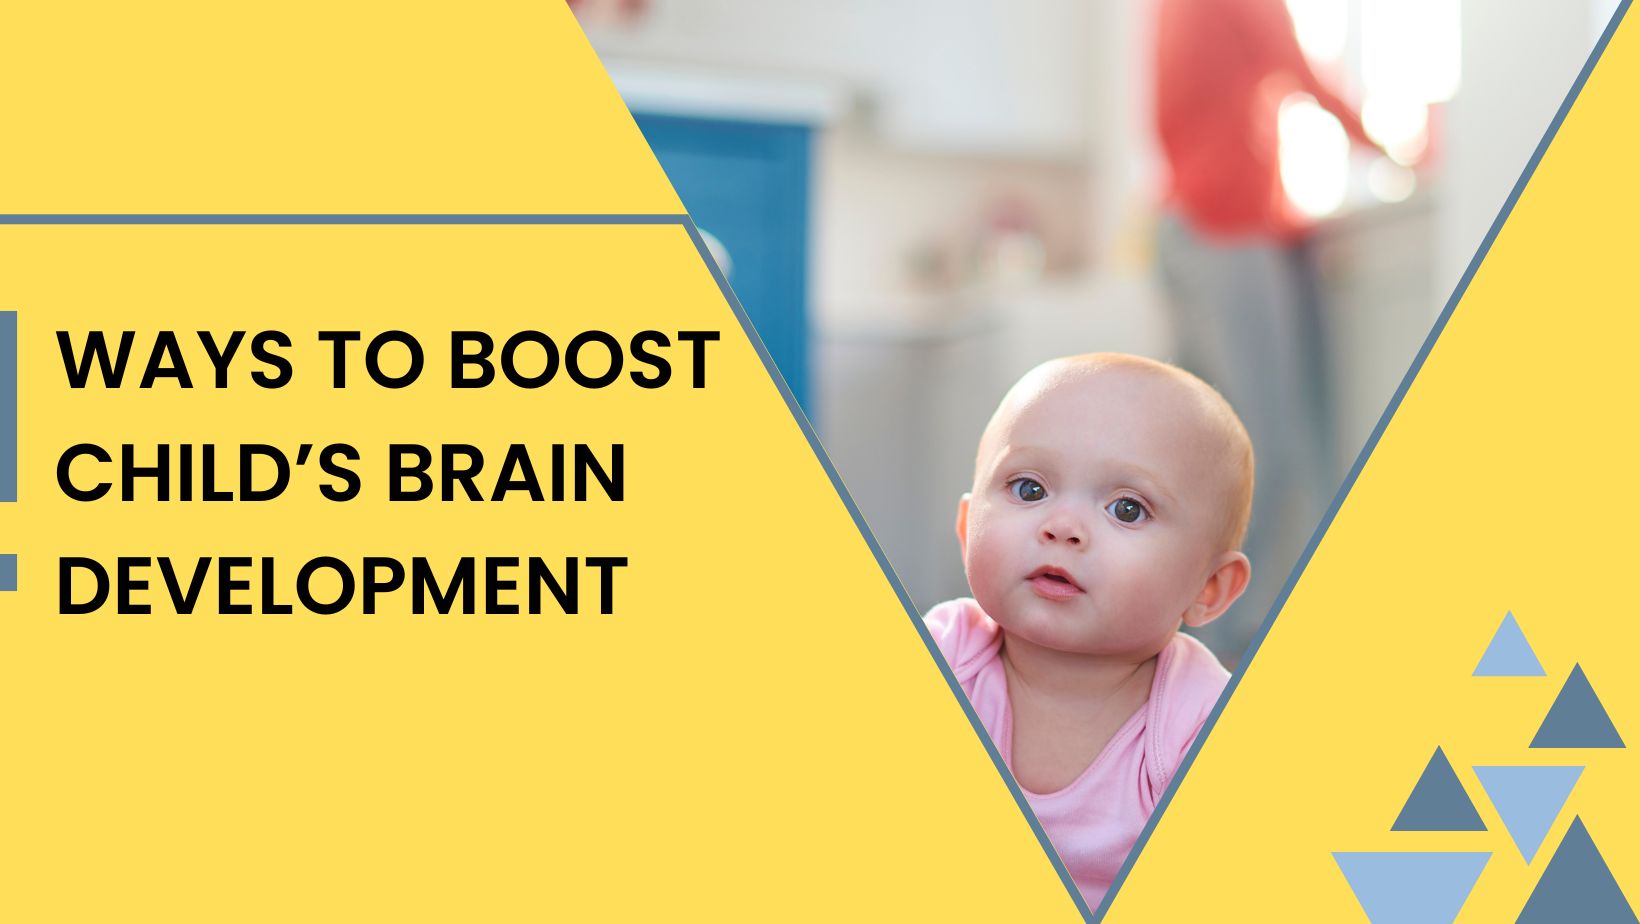 Ways to Boost Child’s Brain Development